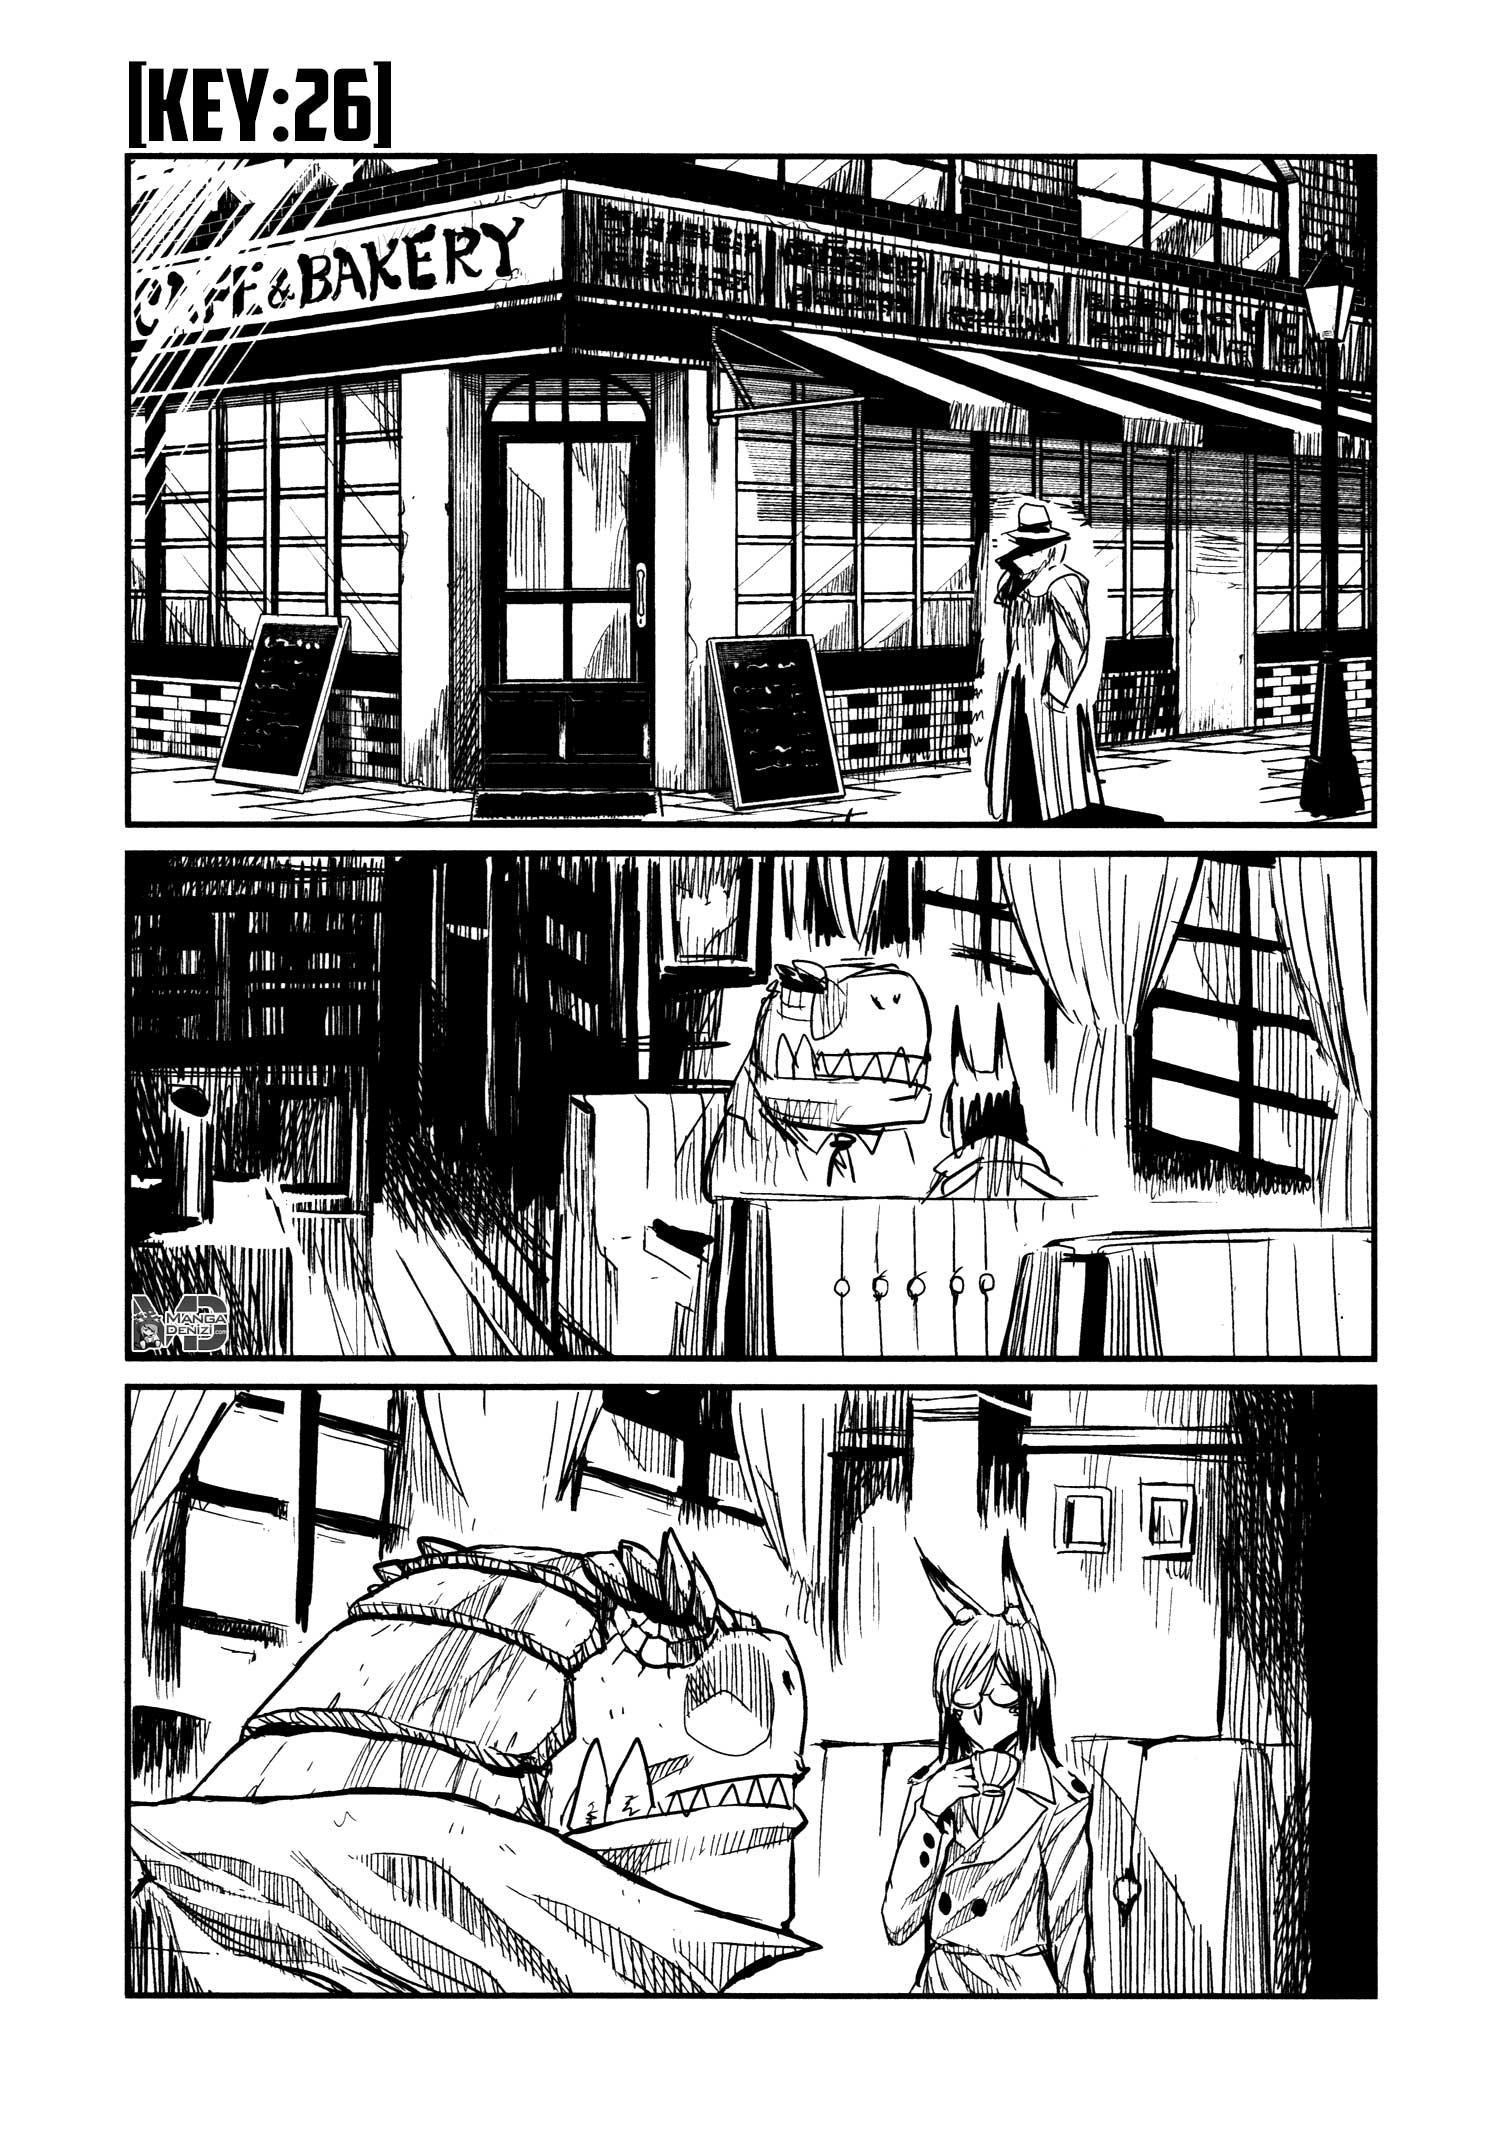 Keyman: The Hand of Judgement mangasının 26 bölümünün 2. sayfasını okuyorsunuz.